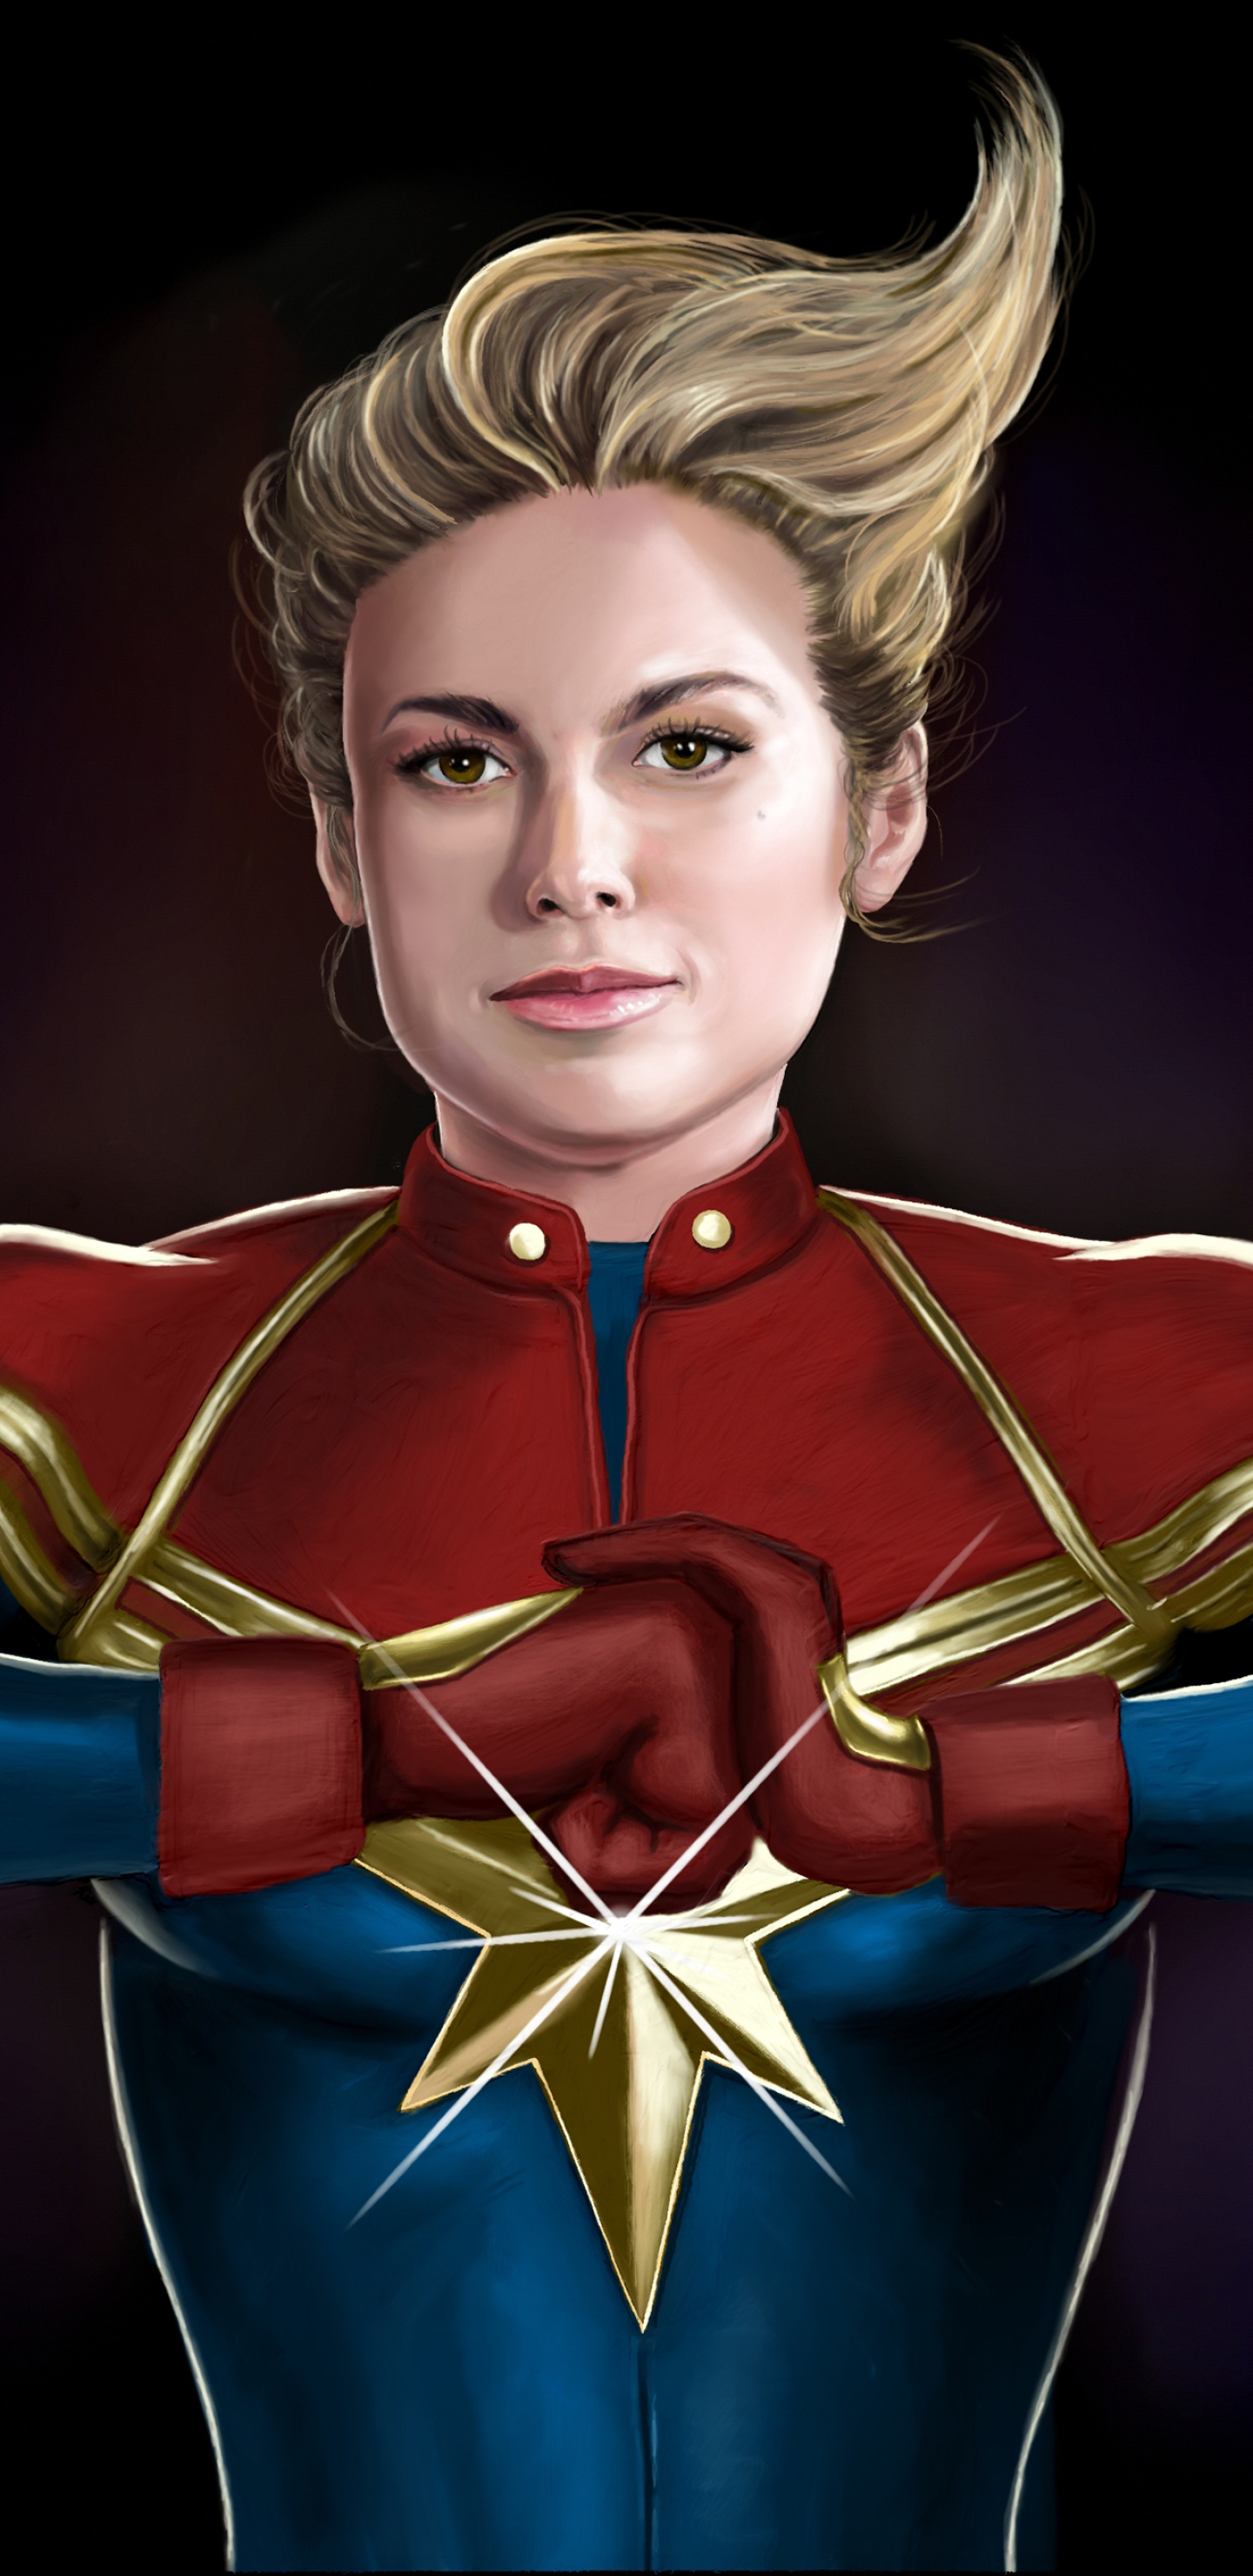 1440x2960 Brie Larson as Captain Marvel Illustration ...